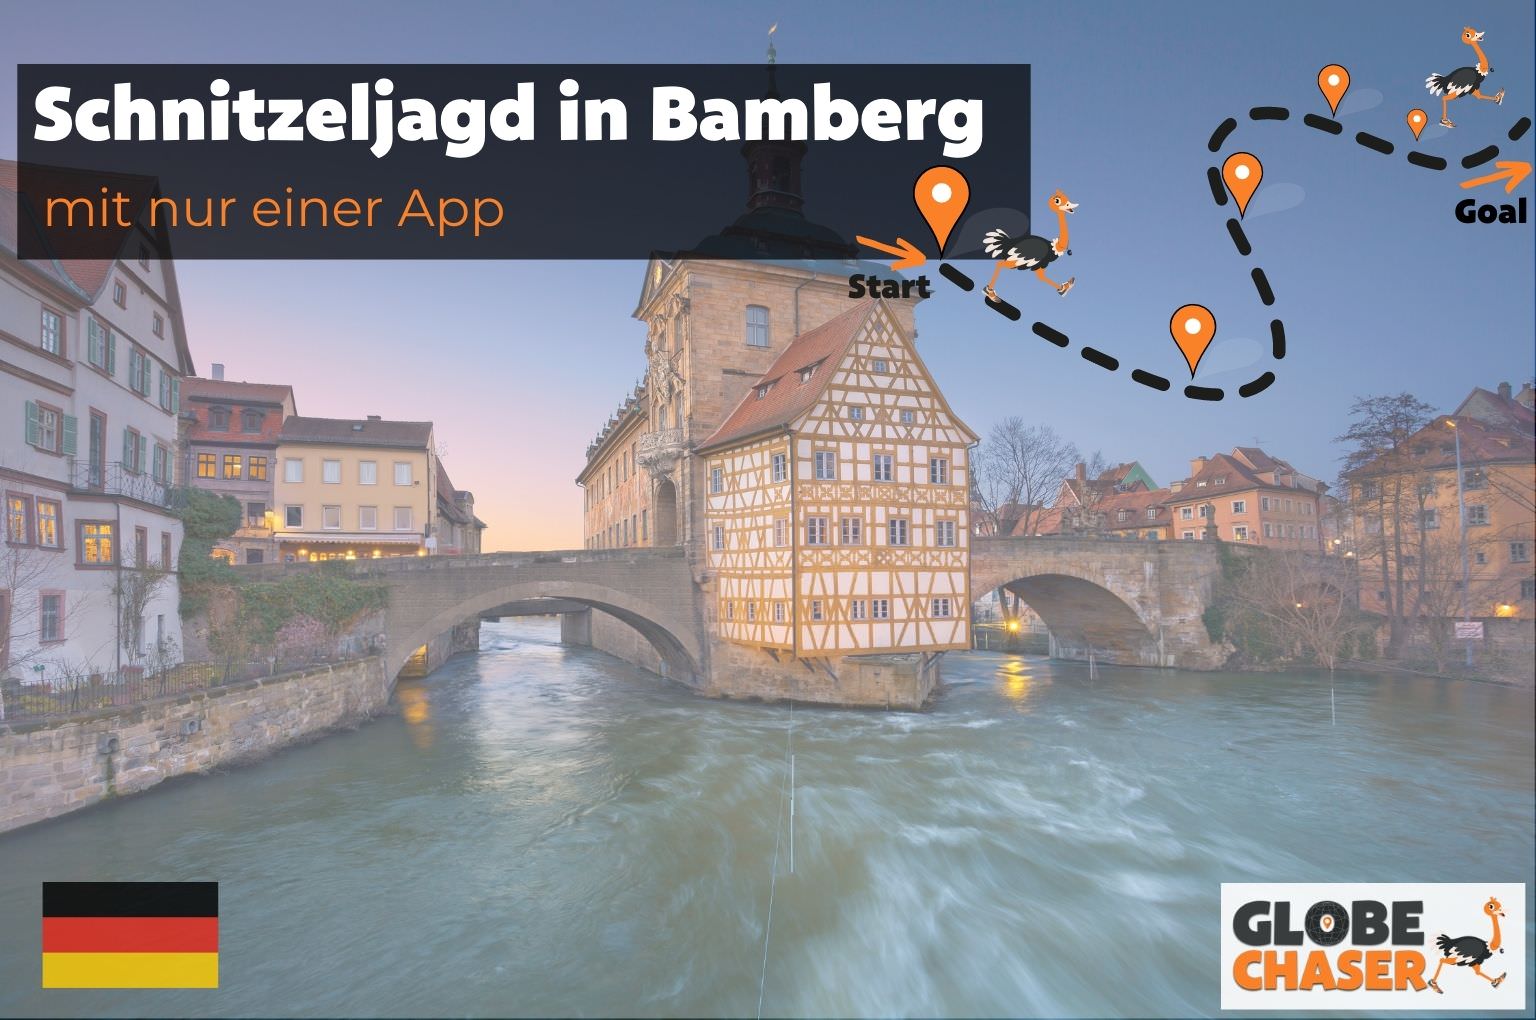 Schnitzeljagd in Bamberg mit App - Globe Chaser Erlebnisse Deutschland